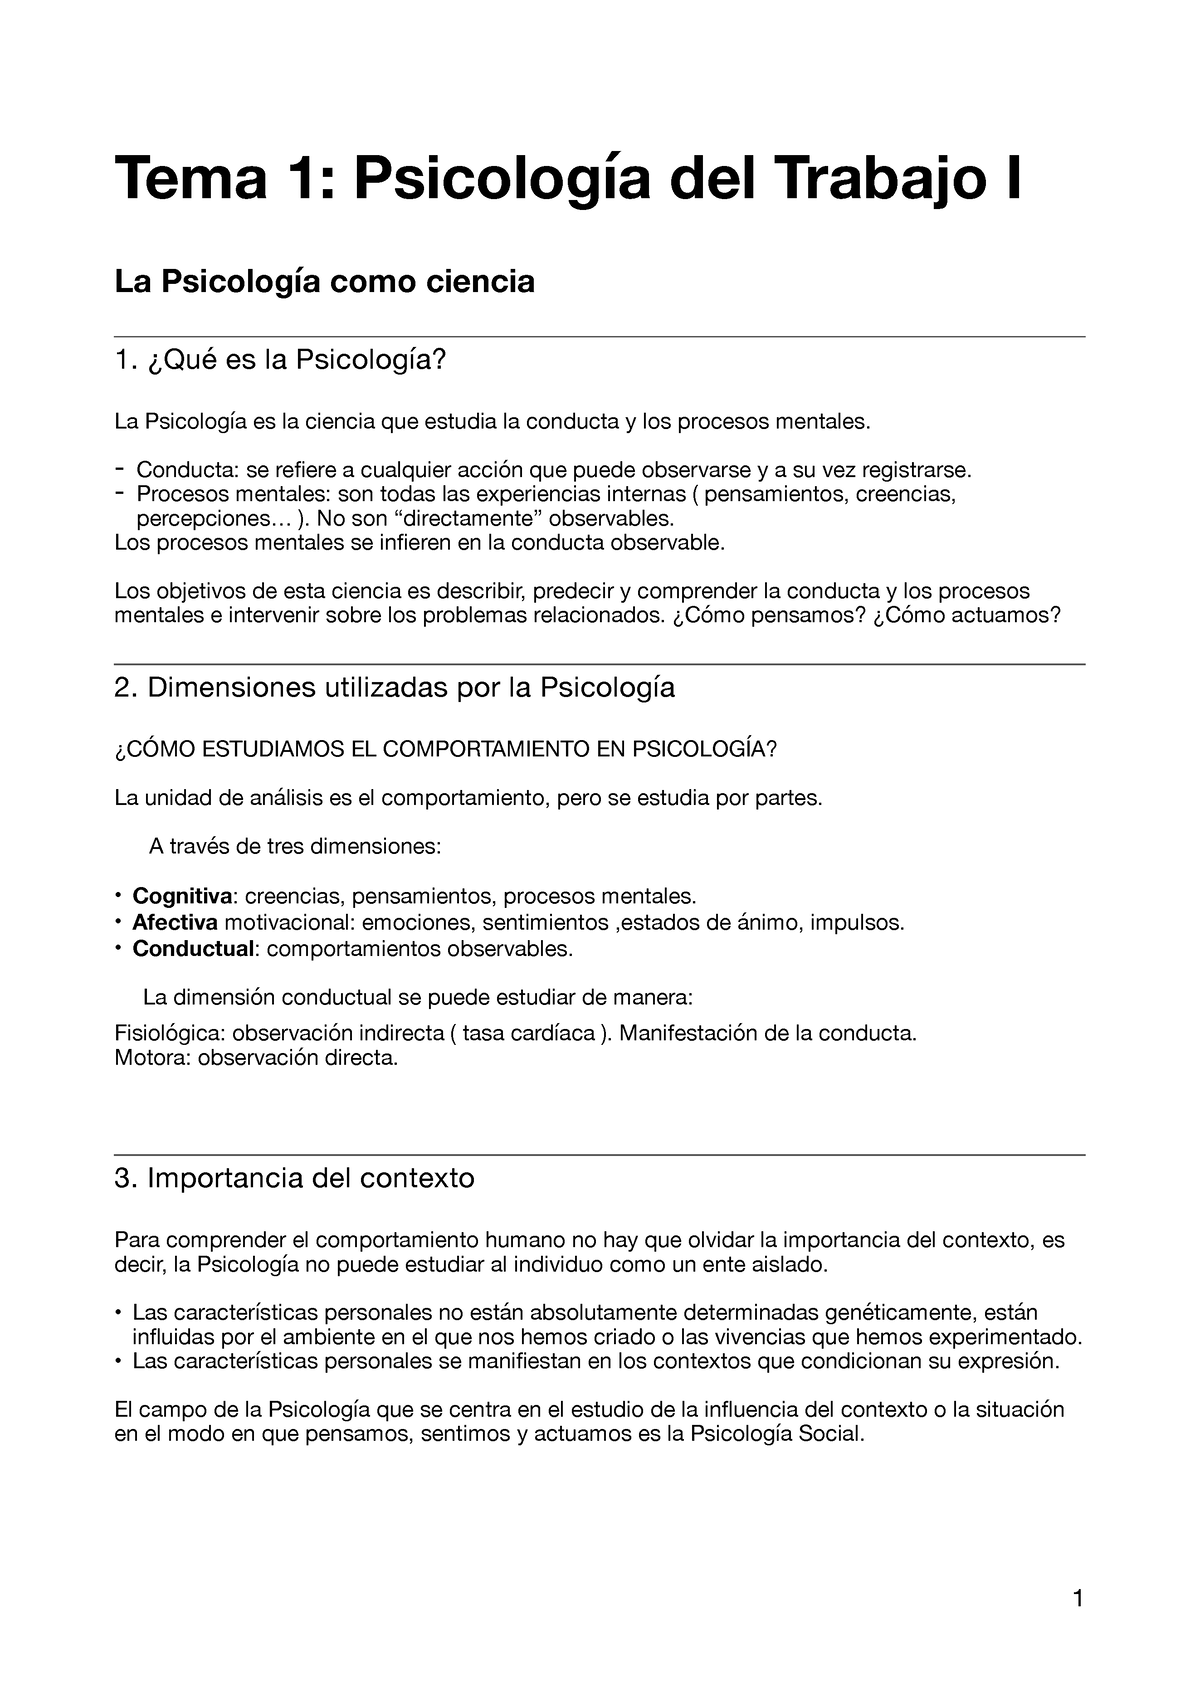 Apuntes Psicología Del Trabajo I Tema 1 Psicología Del Trabajo I La Psicología Como Ciencia 1 4403